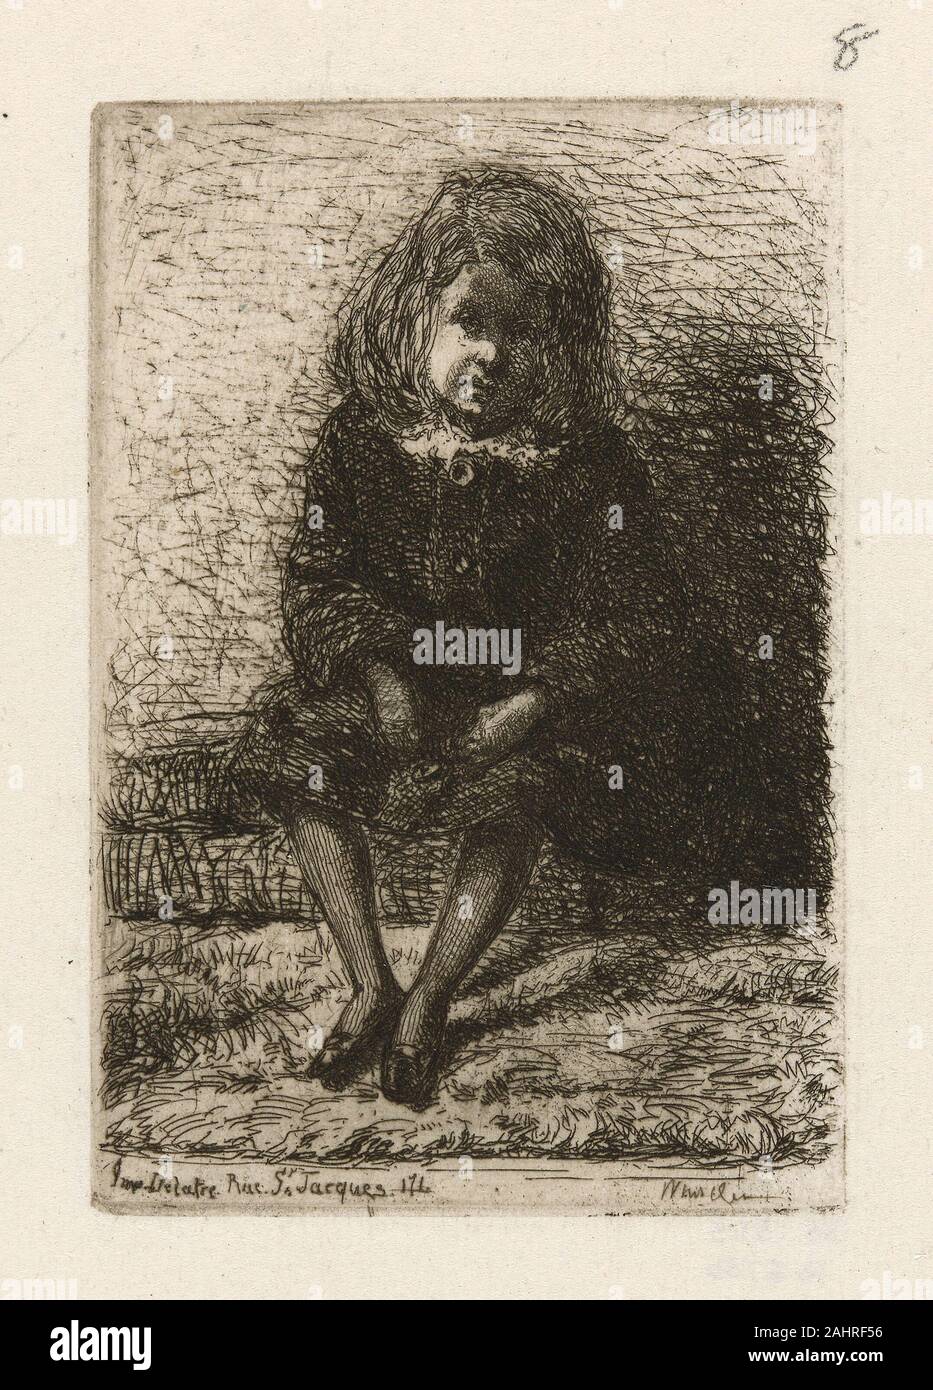 James McNeill Whistler. Little Arthur. 1857 - 1858. In den Vereinigten Staaten. Ätzen in Schwarz auf weißem Papier Stockfoto